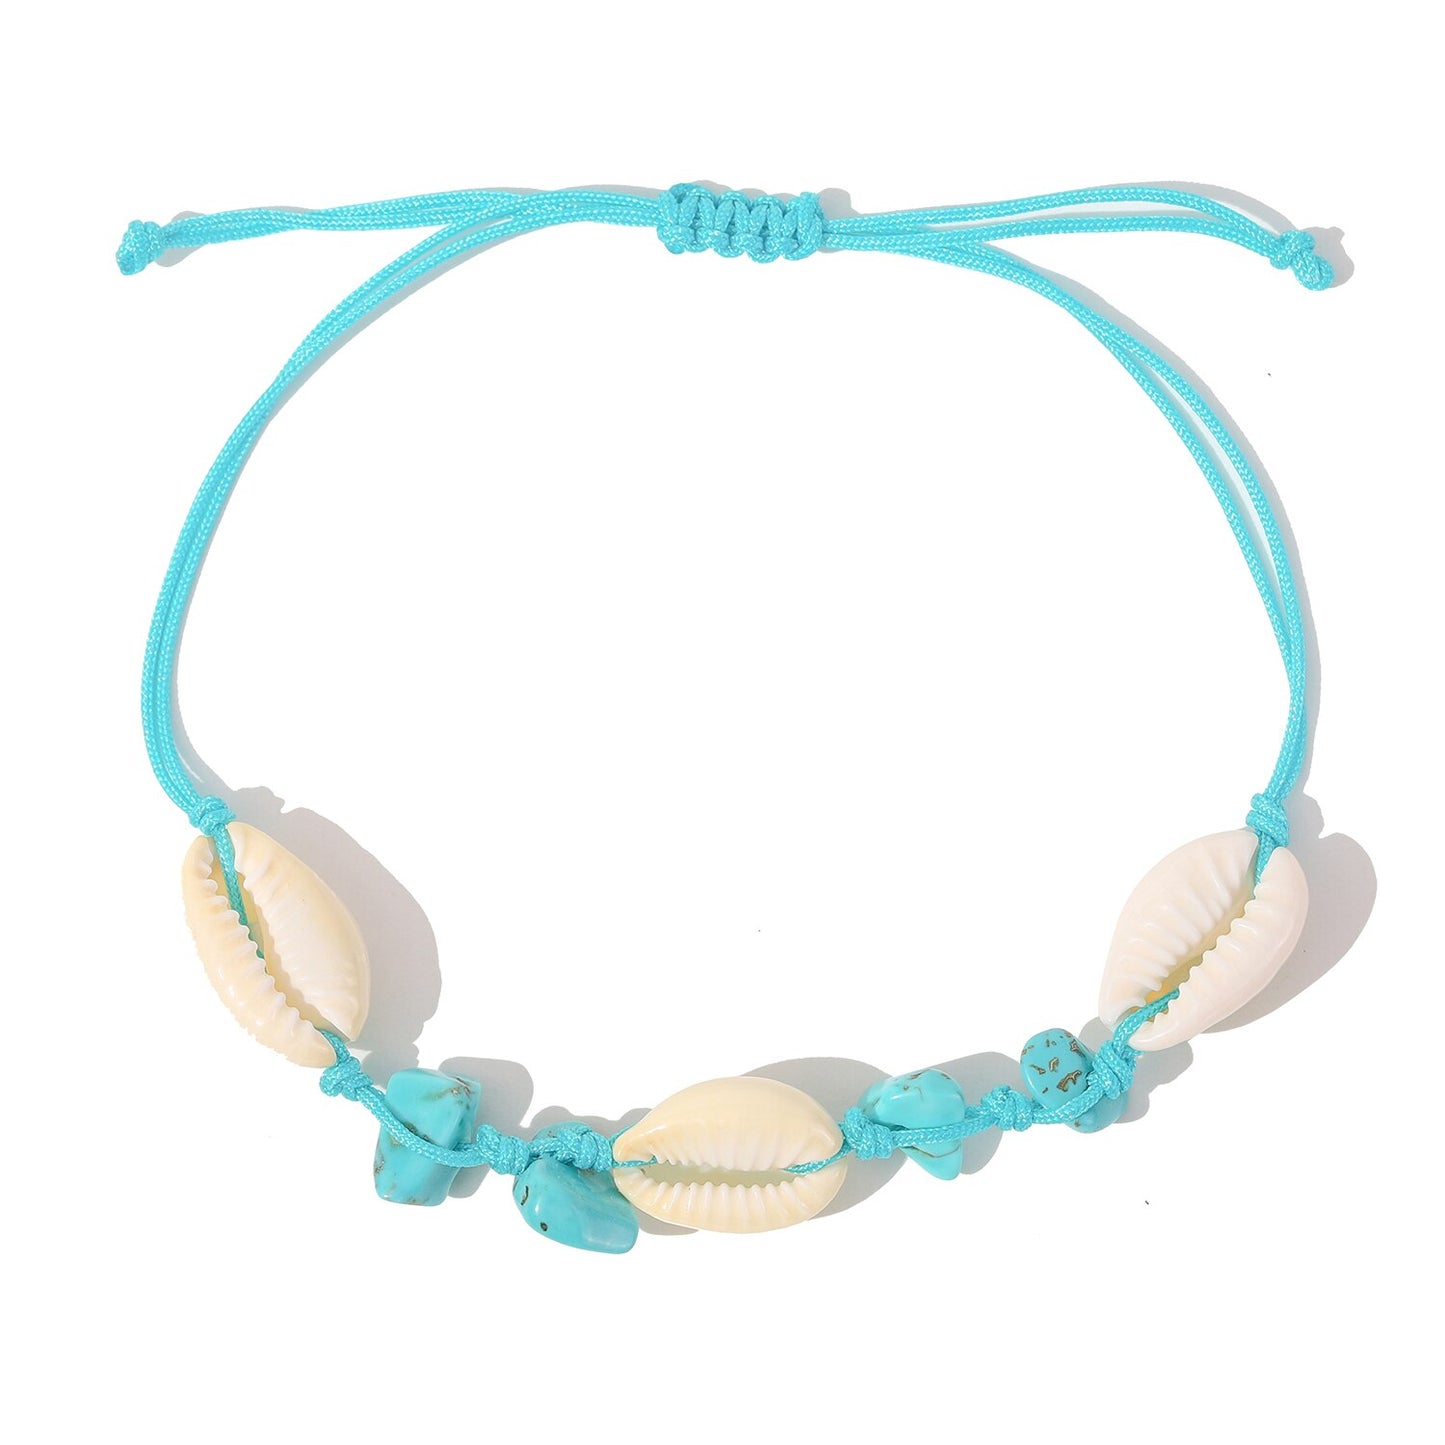 12Pcs/Lot Beach Shell Natural Stone Bracelets Anklets Set for Women Girls Summer Handmade Ankle Adjustable Turquoise Bracelet